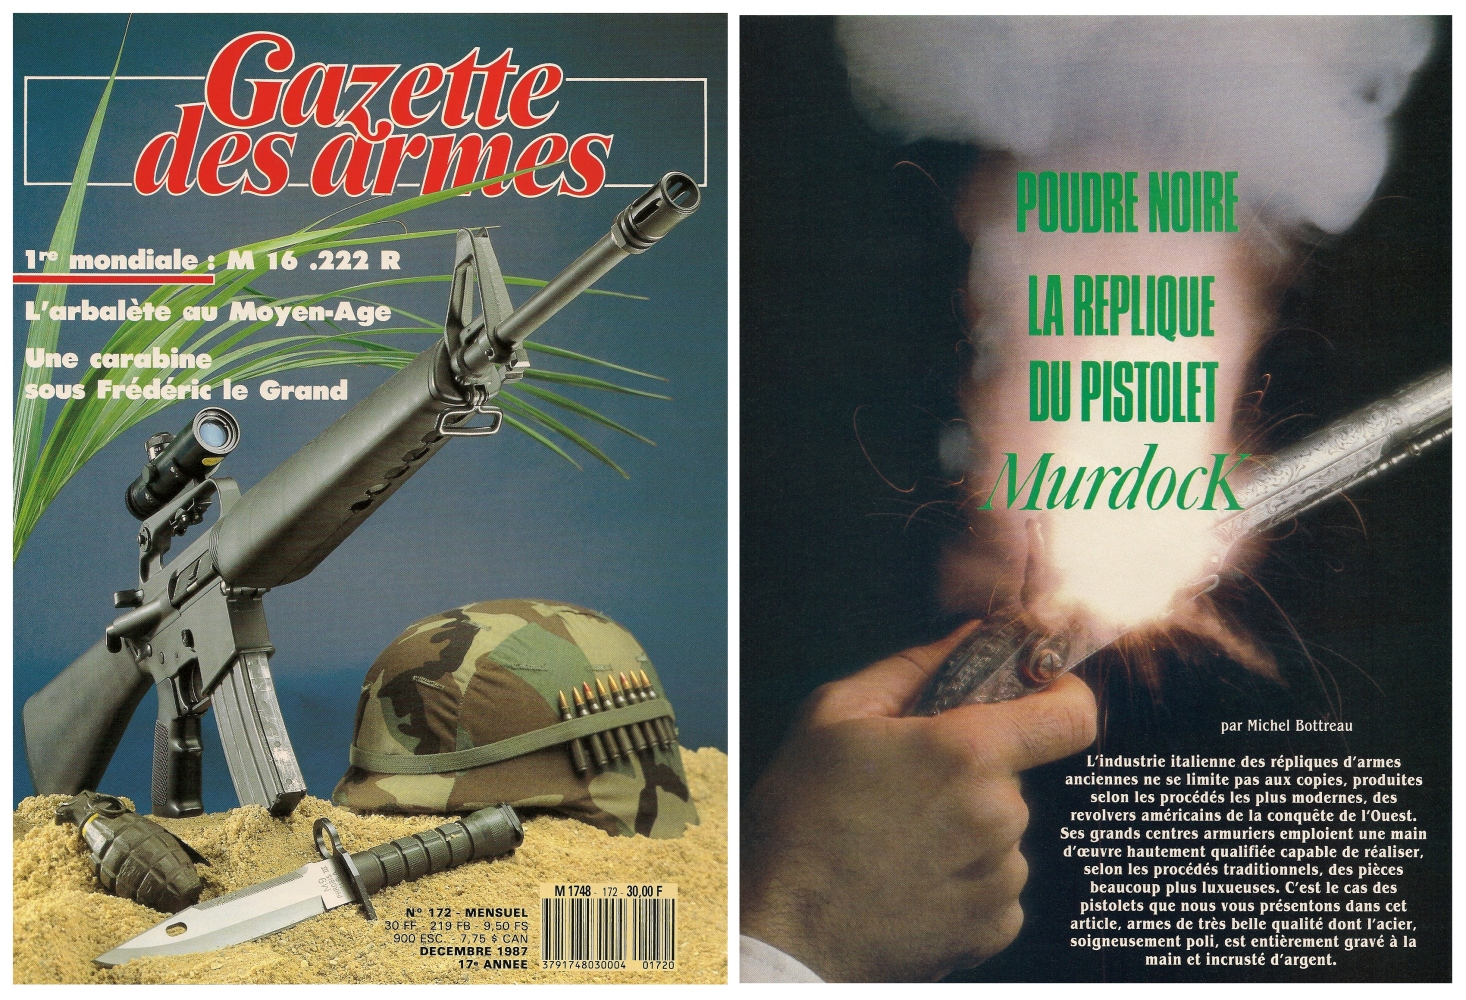 Le banc d’essai de la réplique du pistolet Murdoch a été publié sur 5 pages dans le magazine Gazette des Armes n°172 (décembre 1987).